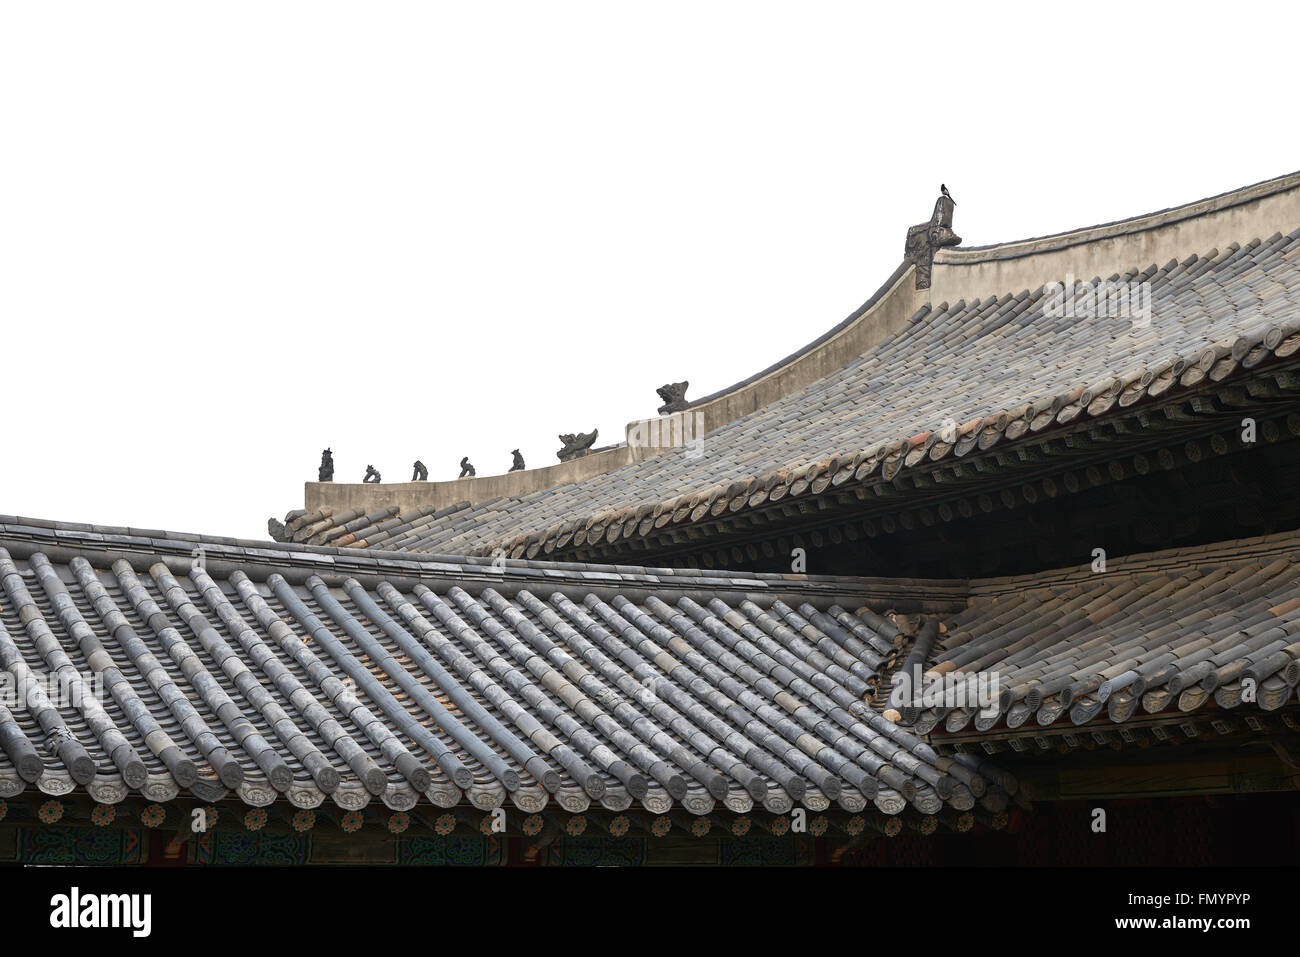 Koreanische Ziegeldächern traditionelle, isoliert auf weiss. Stockfoto